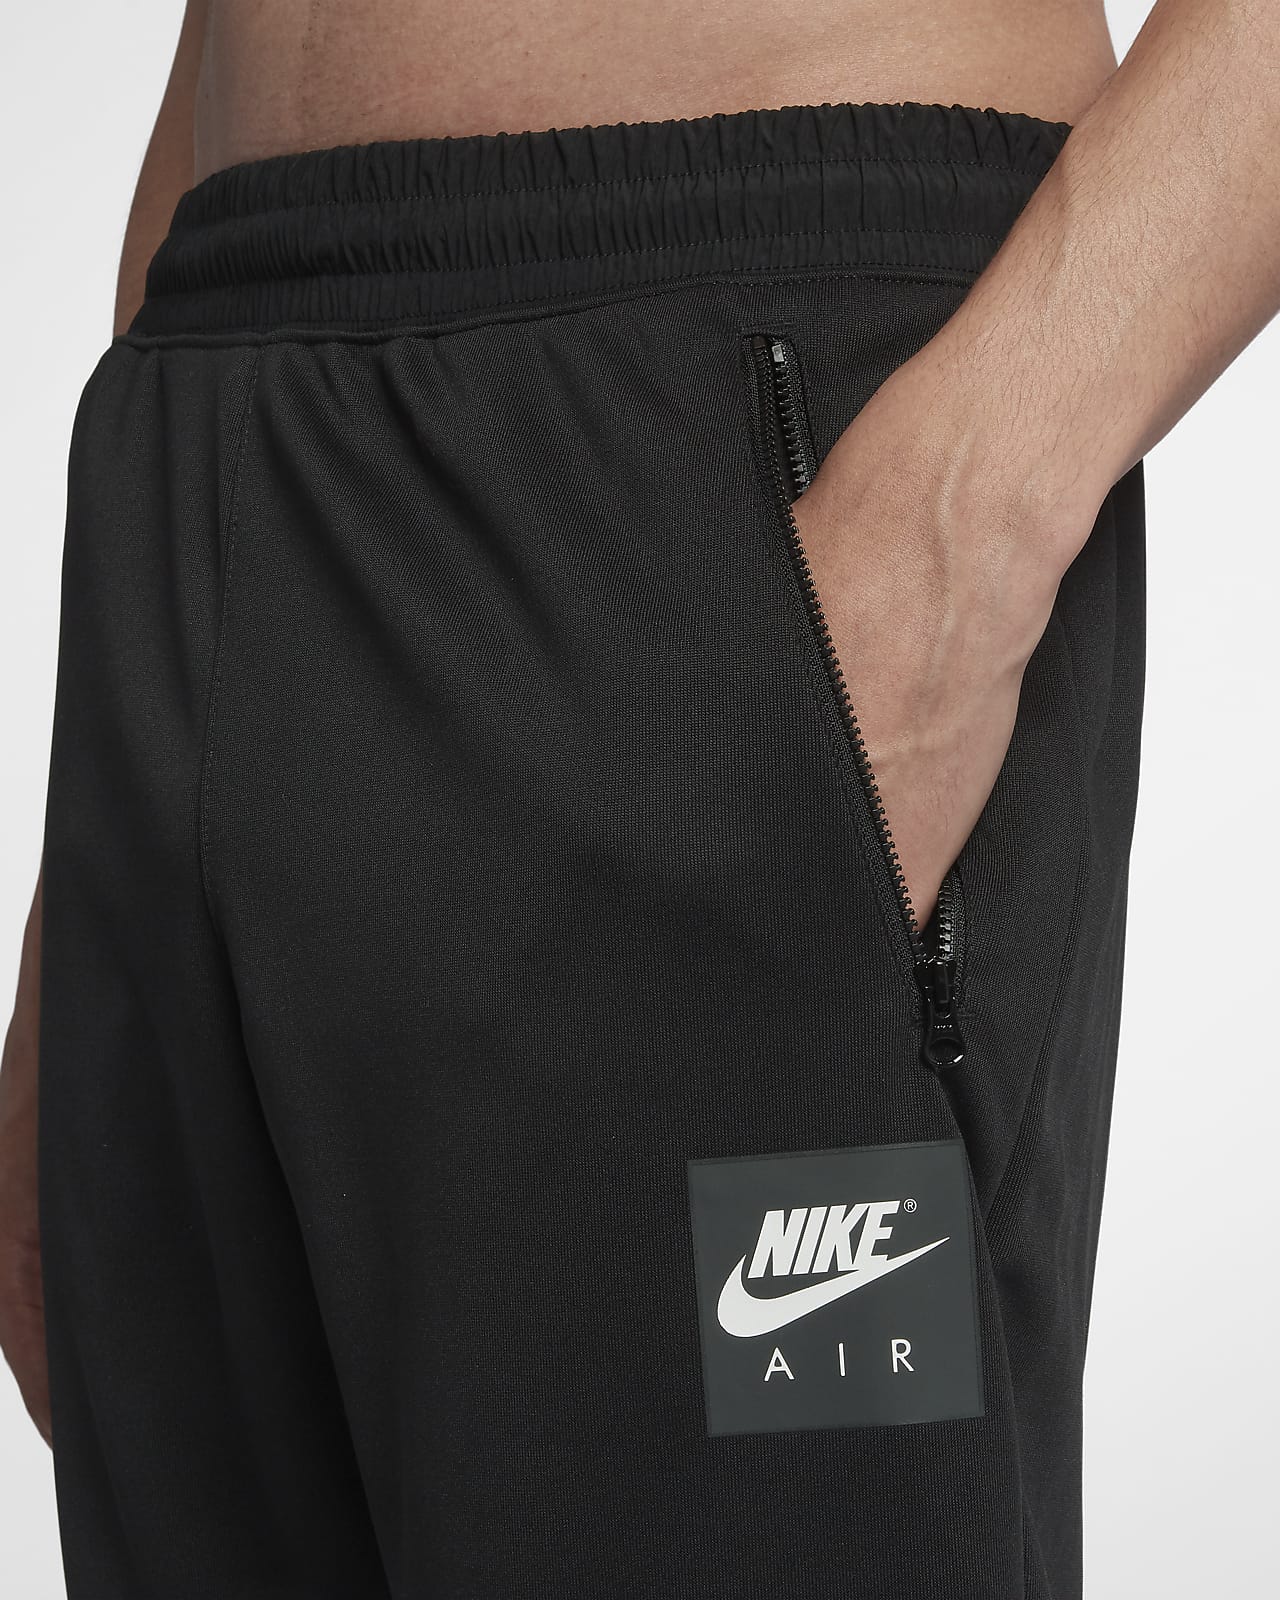 Nike Dri-FIT Strike Soccer Pants Mens Sz Large CW5862-010 | eBay